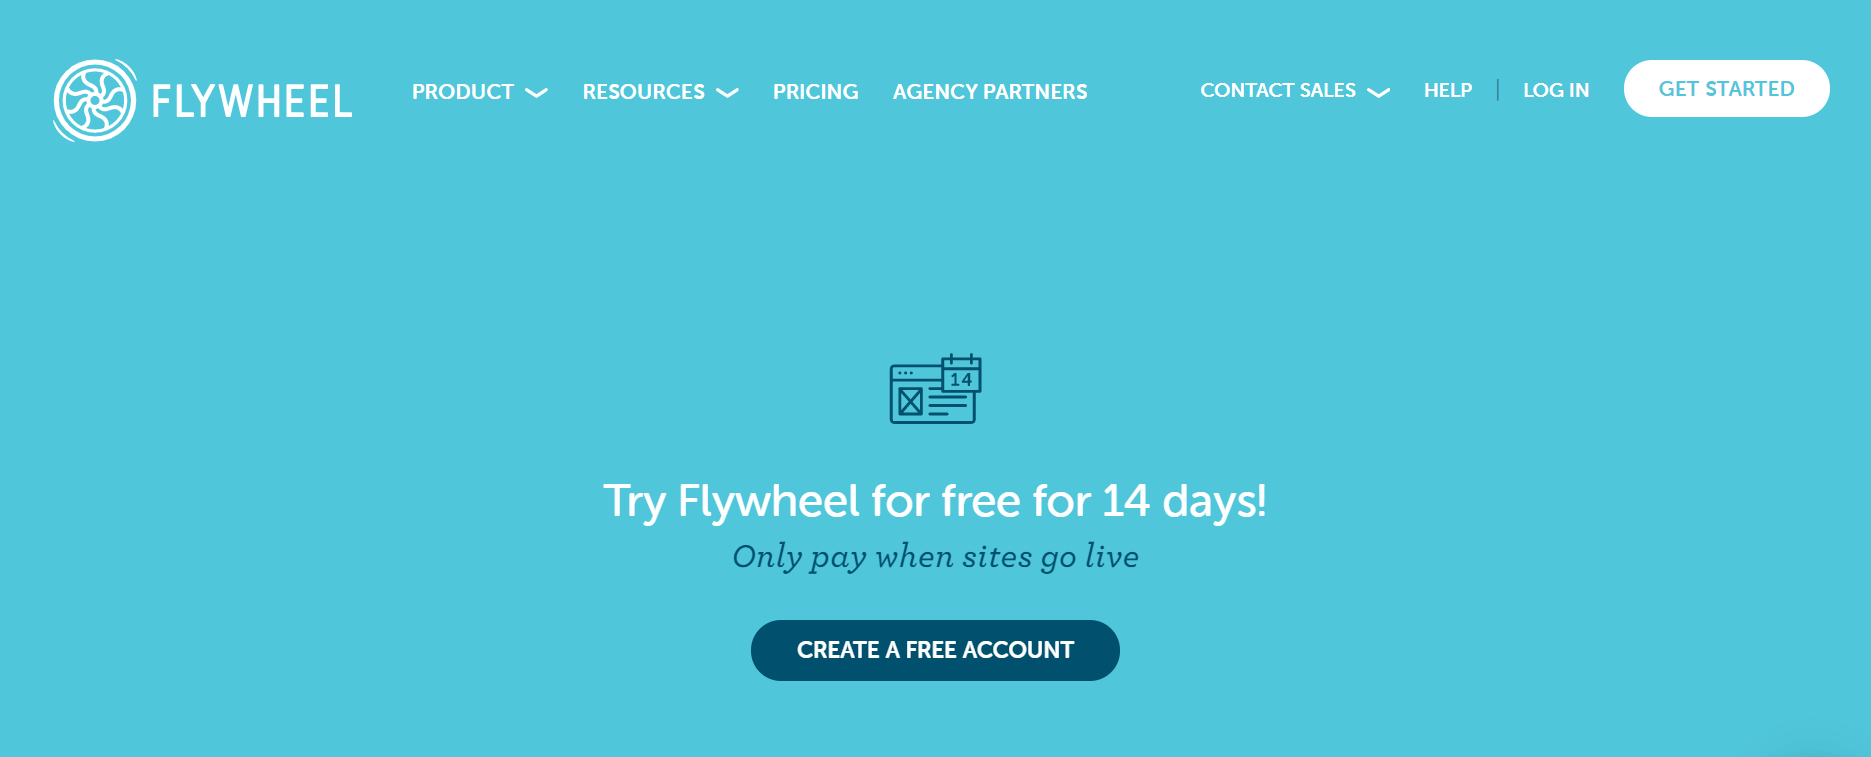 flywheel web hosting free trial